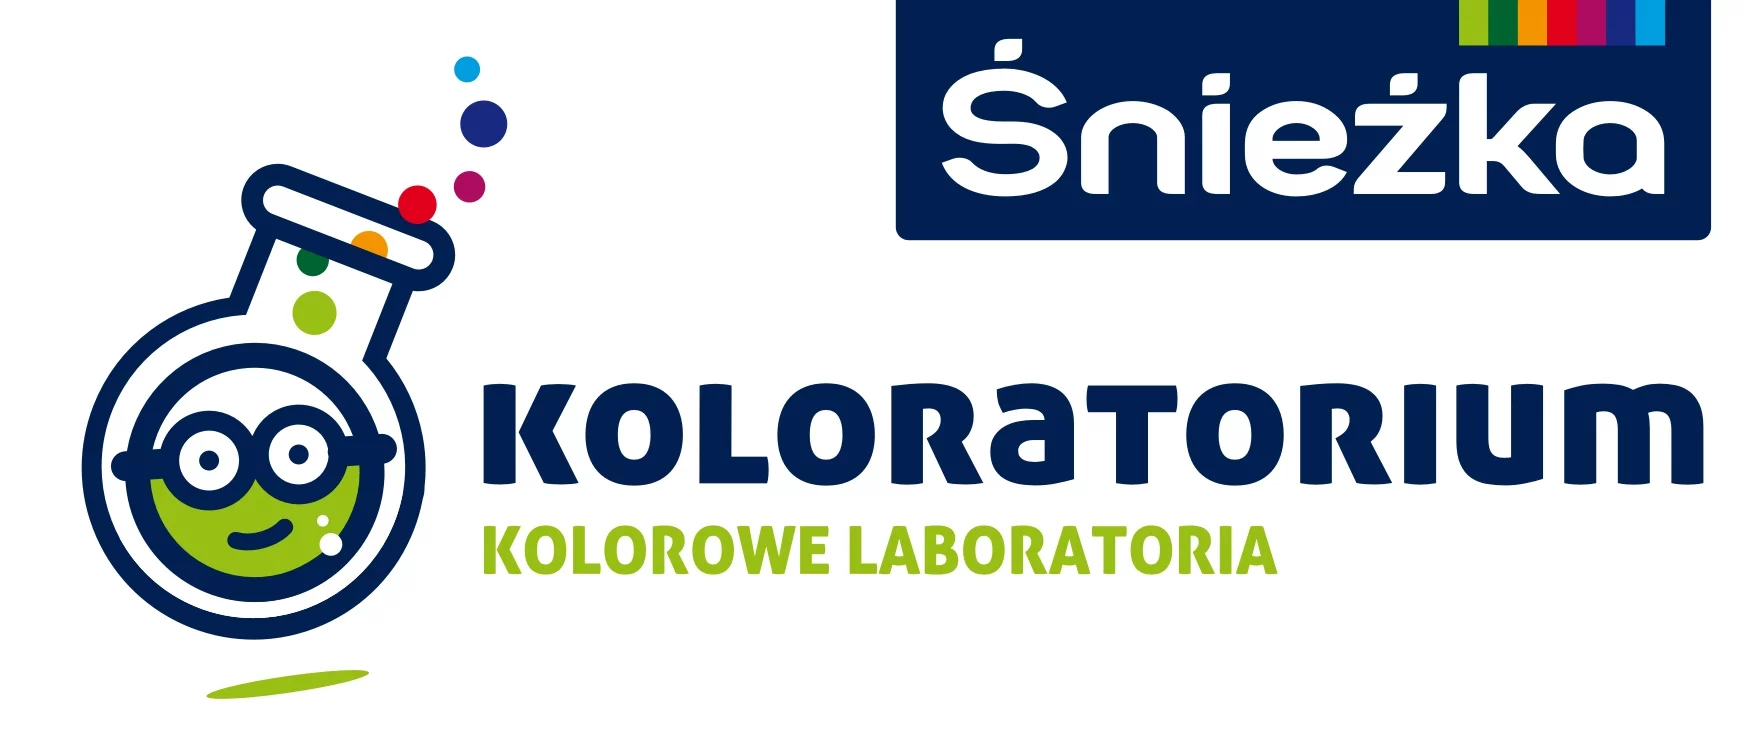 Koloratorium Fabryki Farb i Lakierów Śnieżka SA logo